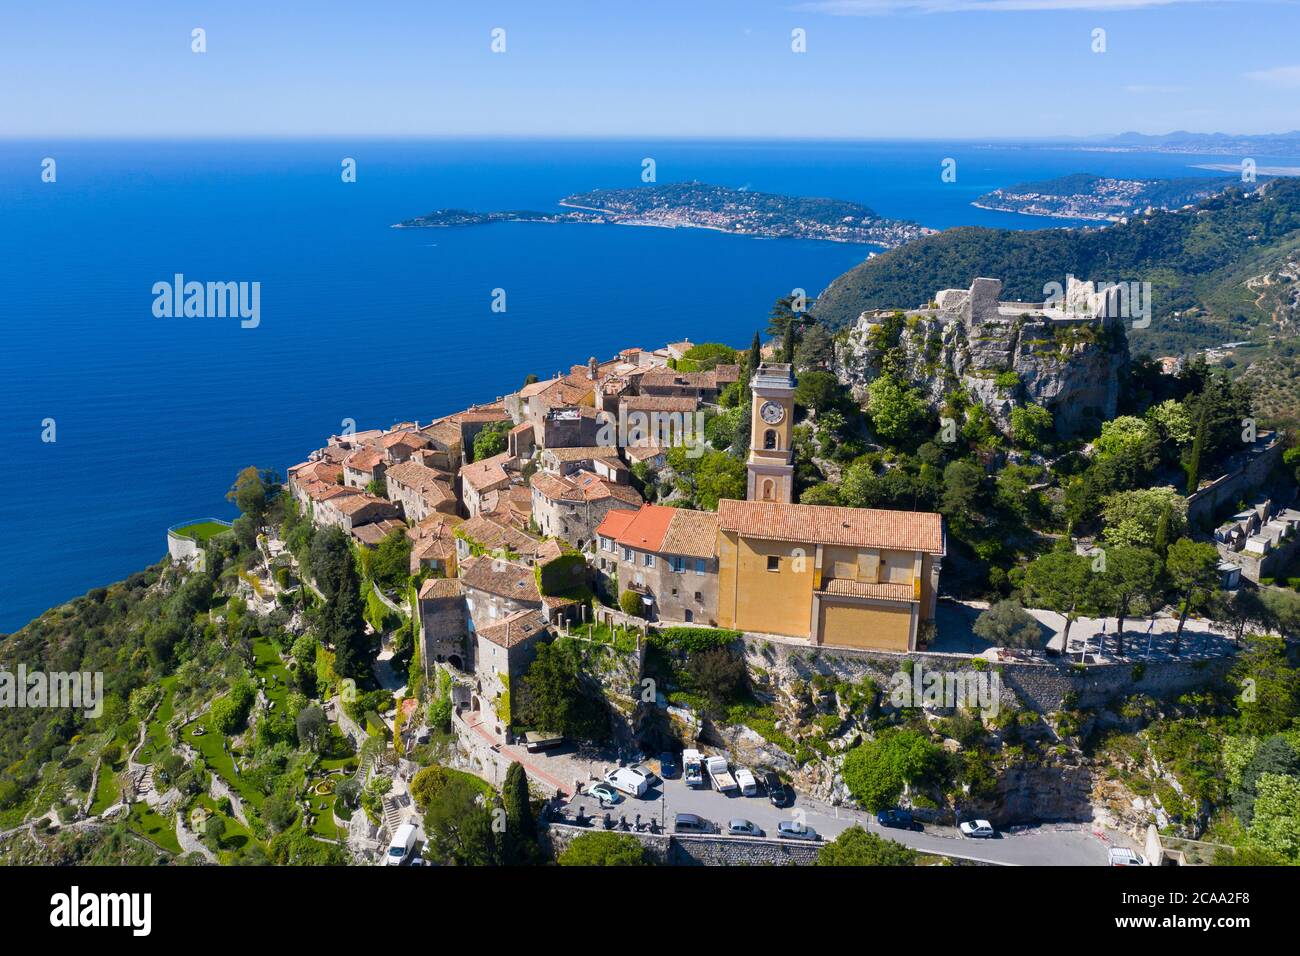 France, vue aérienne d'Eze sur la côte d'azur, un village typique du sud de la France Banque D'Images